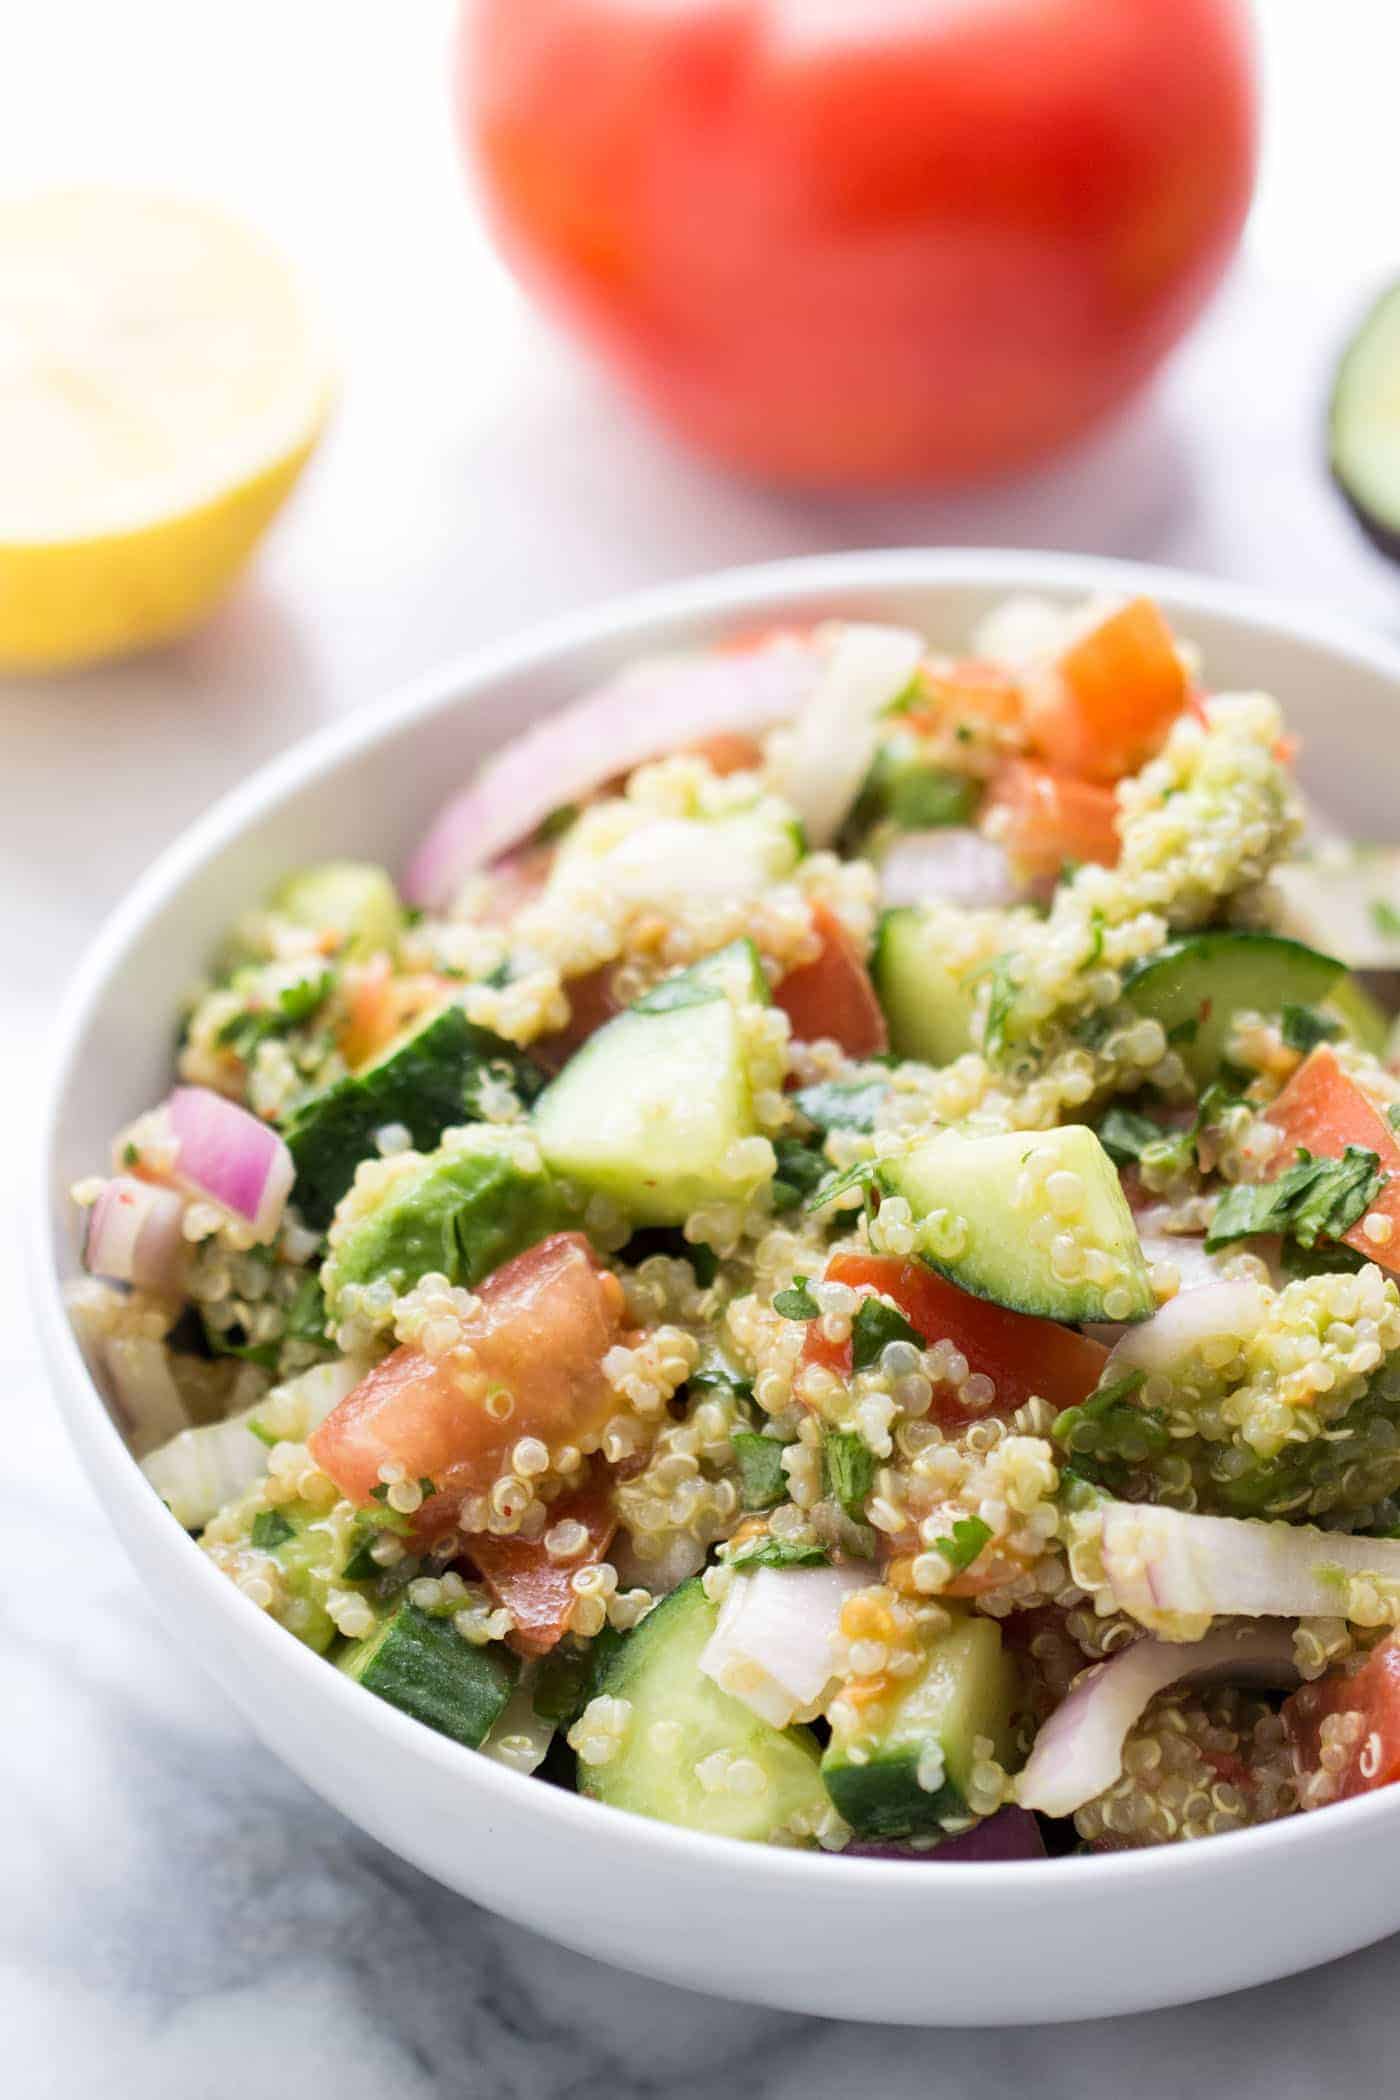 Avocado-Quinoa-Salat mit Tomaten + Gurken - so hell, frisch und gesund! Es ist der perfekte Sommersalat und einfach zu Picknicken oder zum Grillen zu packen {vegan}